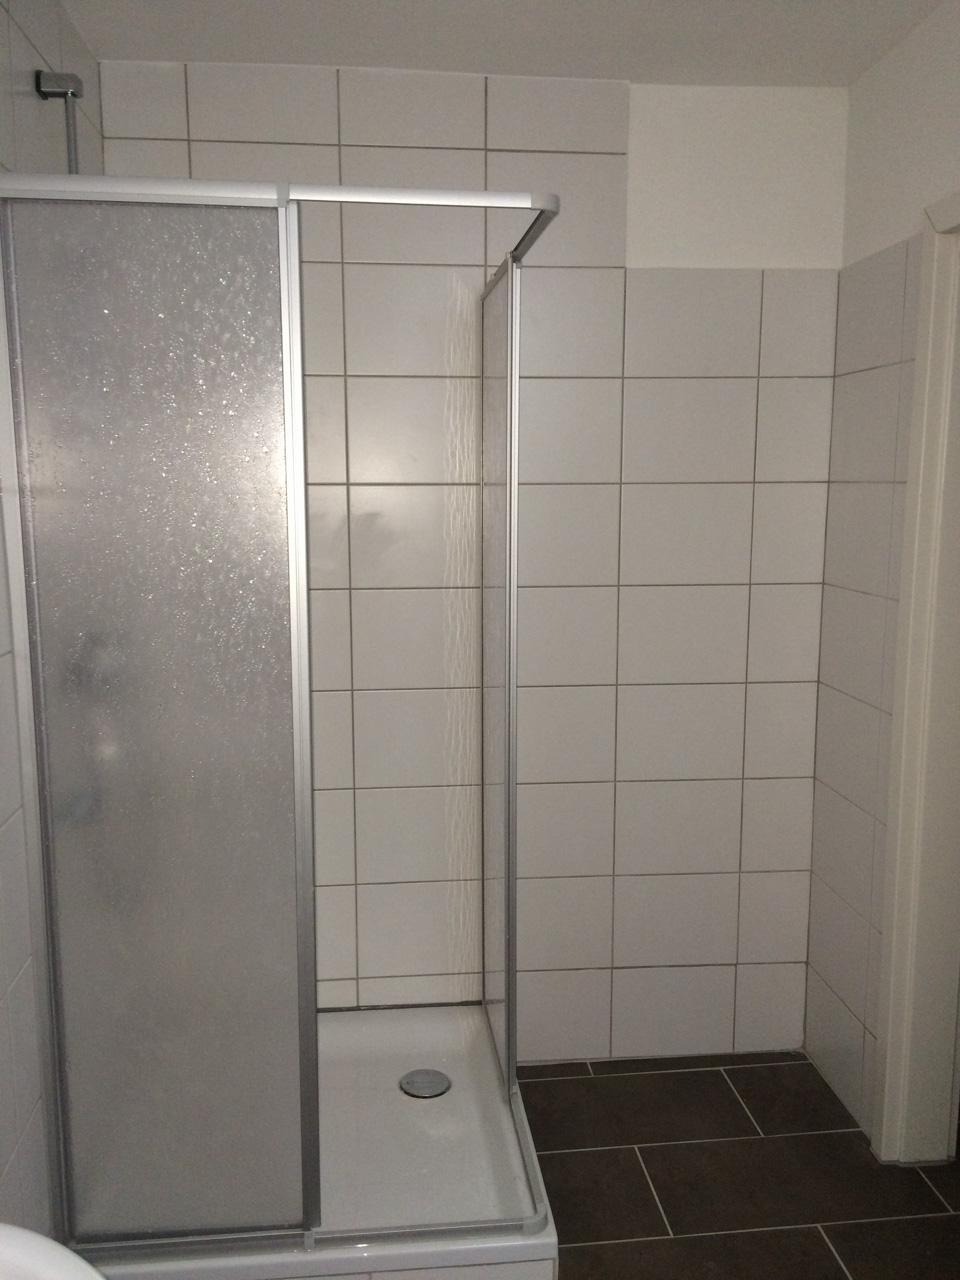 Bad vorher #bad #badezimmer #dusche #studentenwohnung ©IMMOTION Home Staging / Florian Gürbig